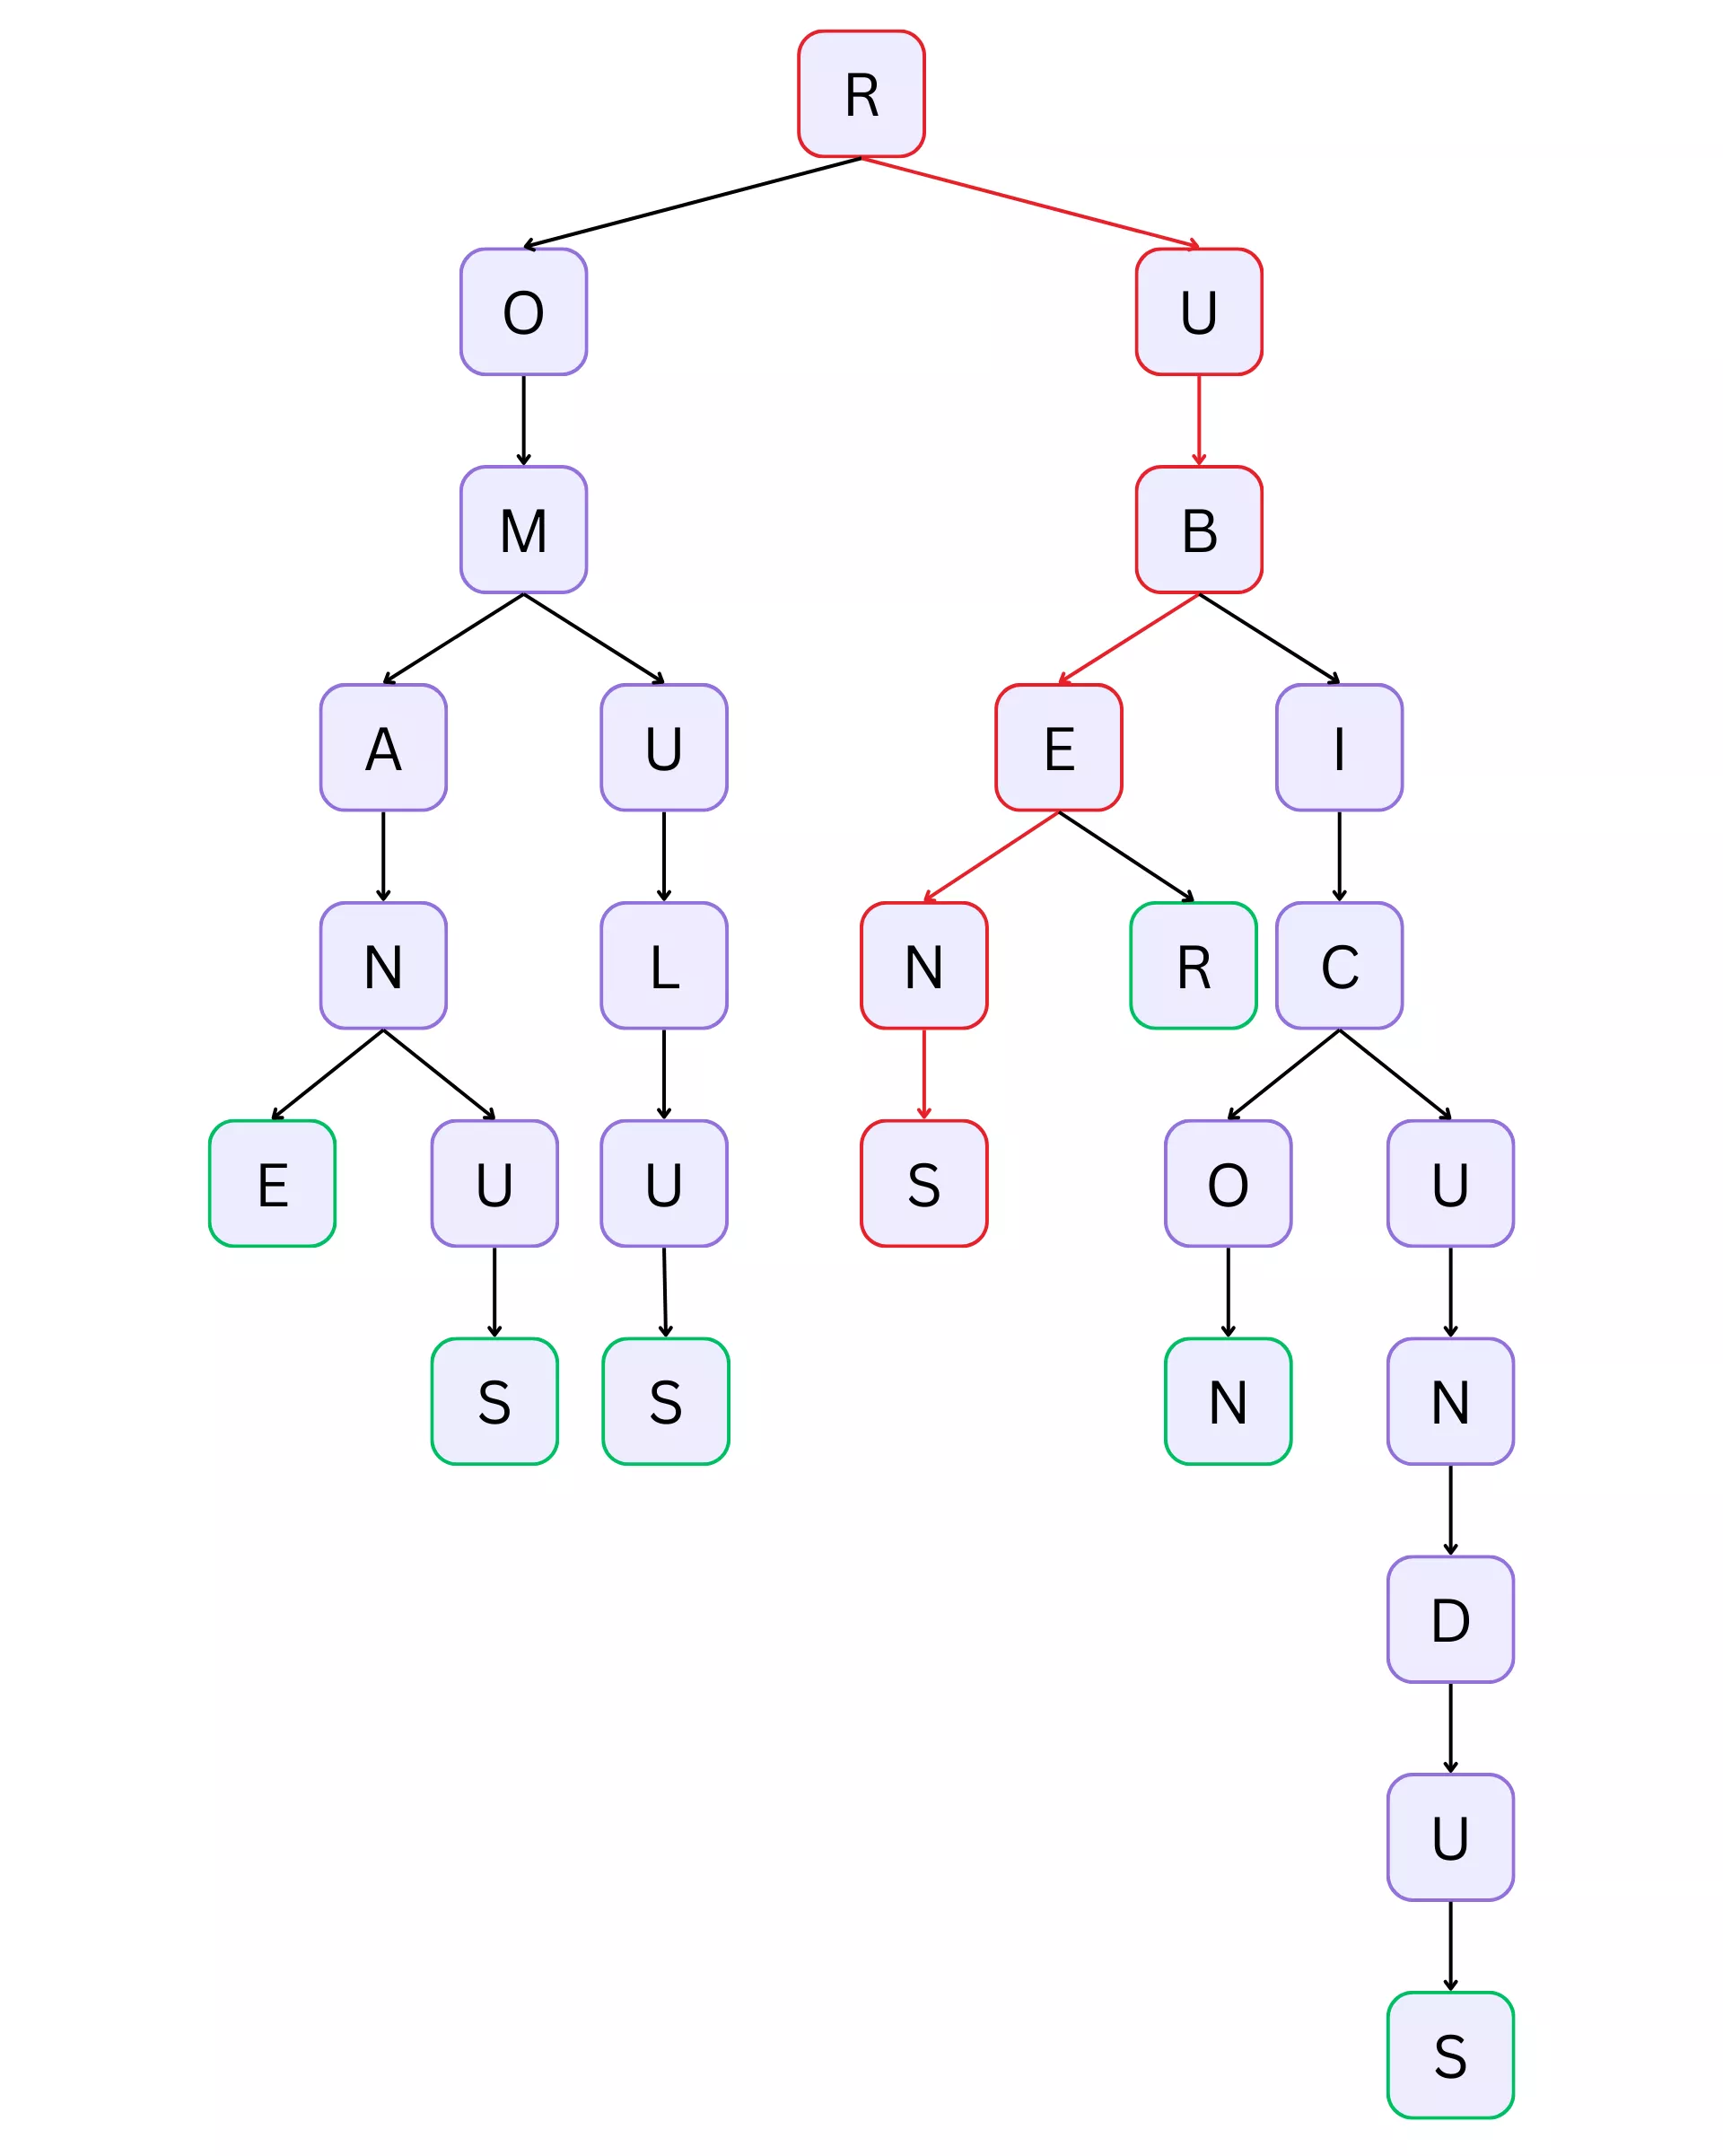 Prefix tree